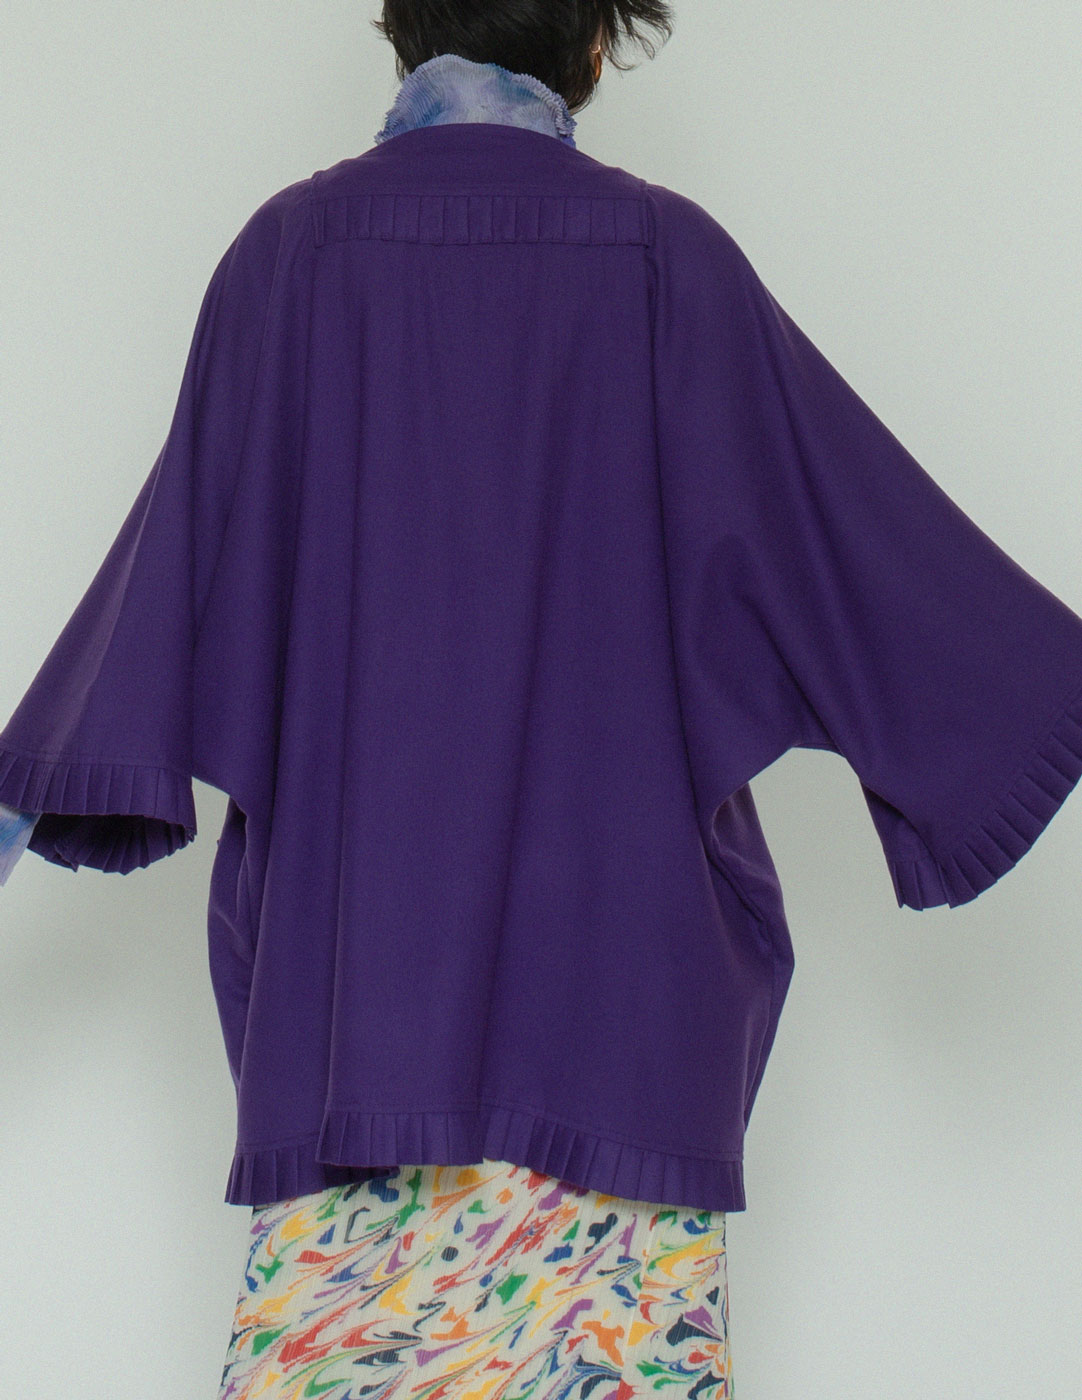 Laura Biagiotti vintage purple wool jacket back detail